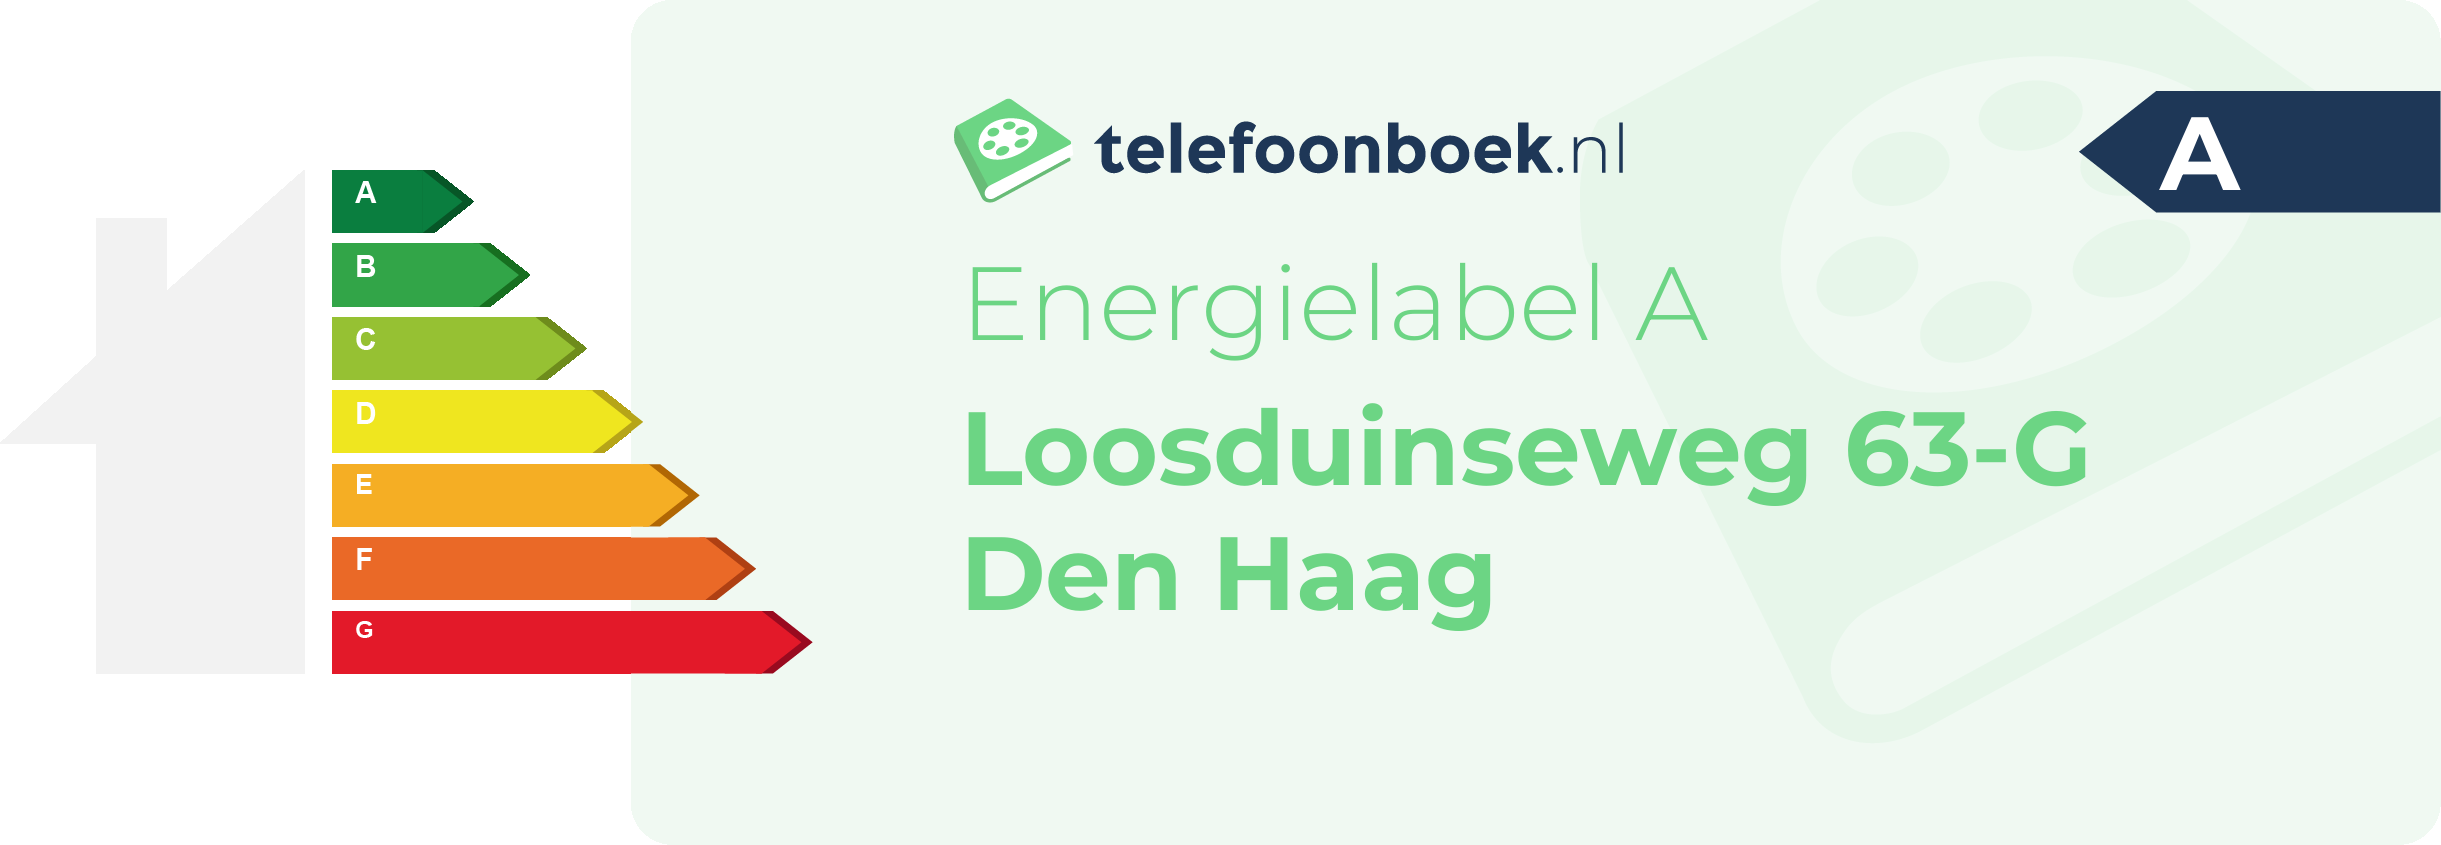 Energielabel Loosduinseweg 63-G Den Haag